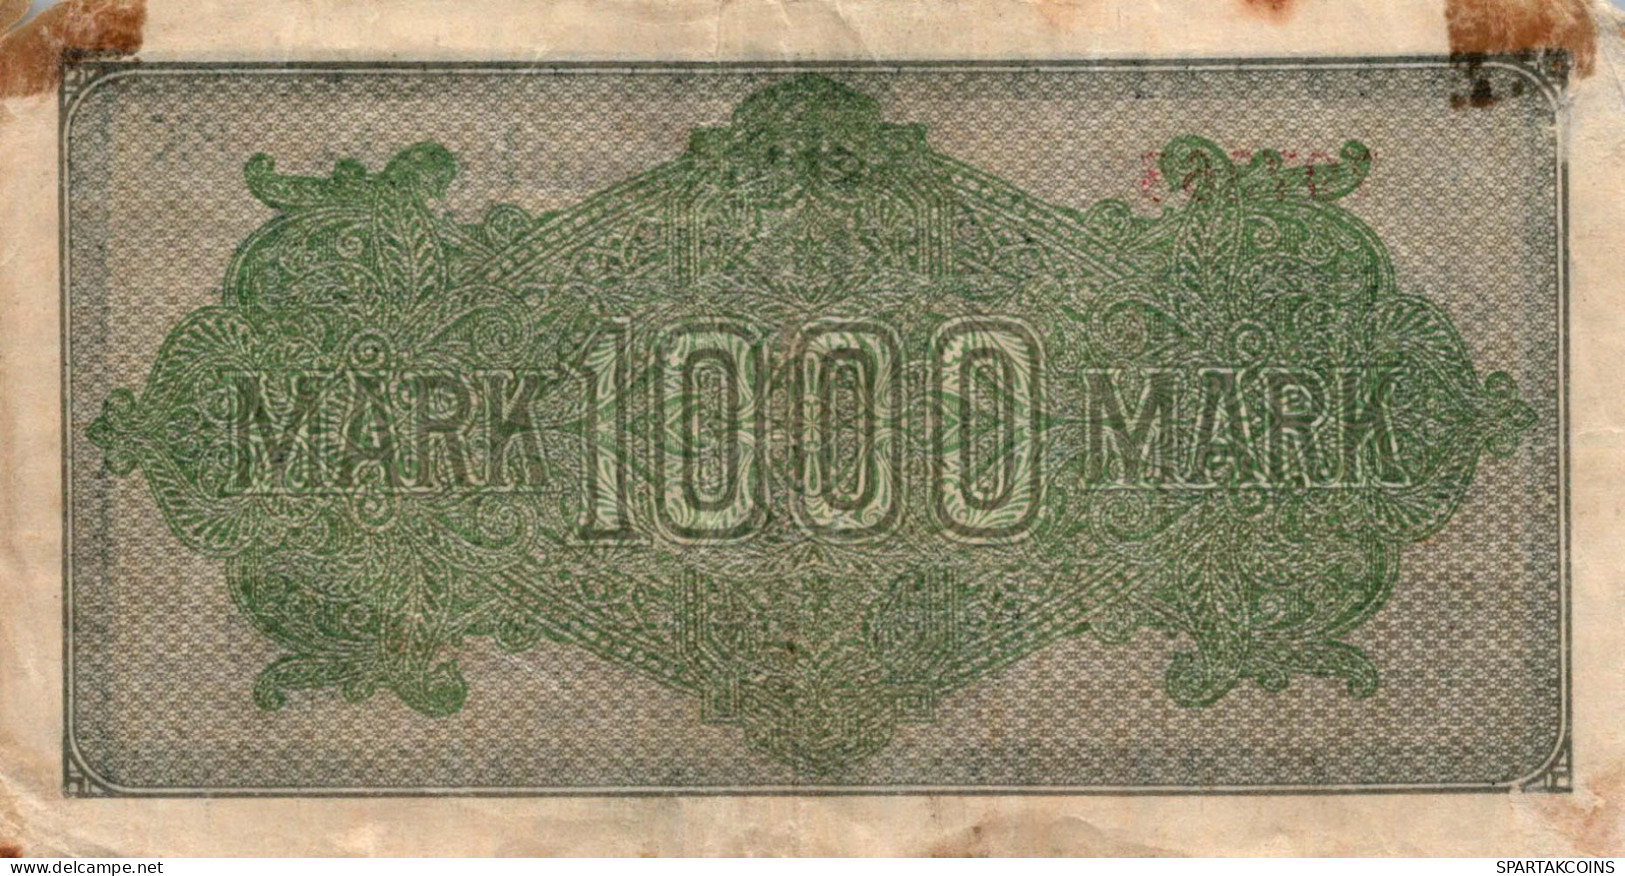 1000 MARK 1922 Stadt BERLIN DEUTSCHLAND Papiergeld Banknote #PL040 - [11] Emissions Locales